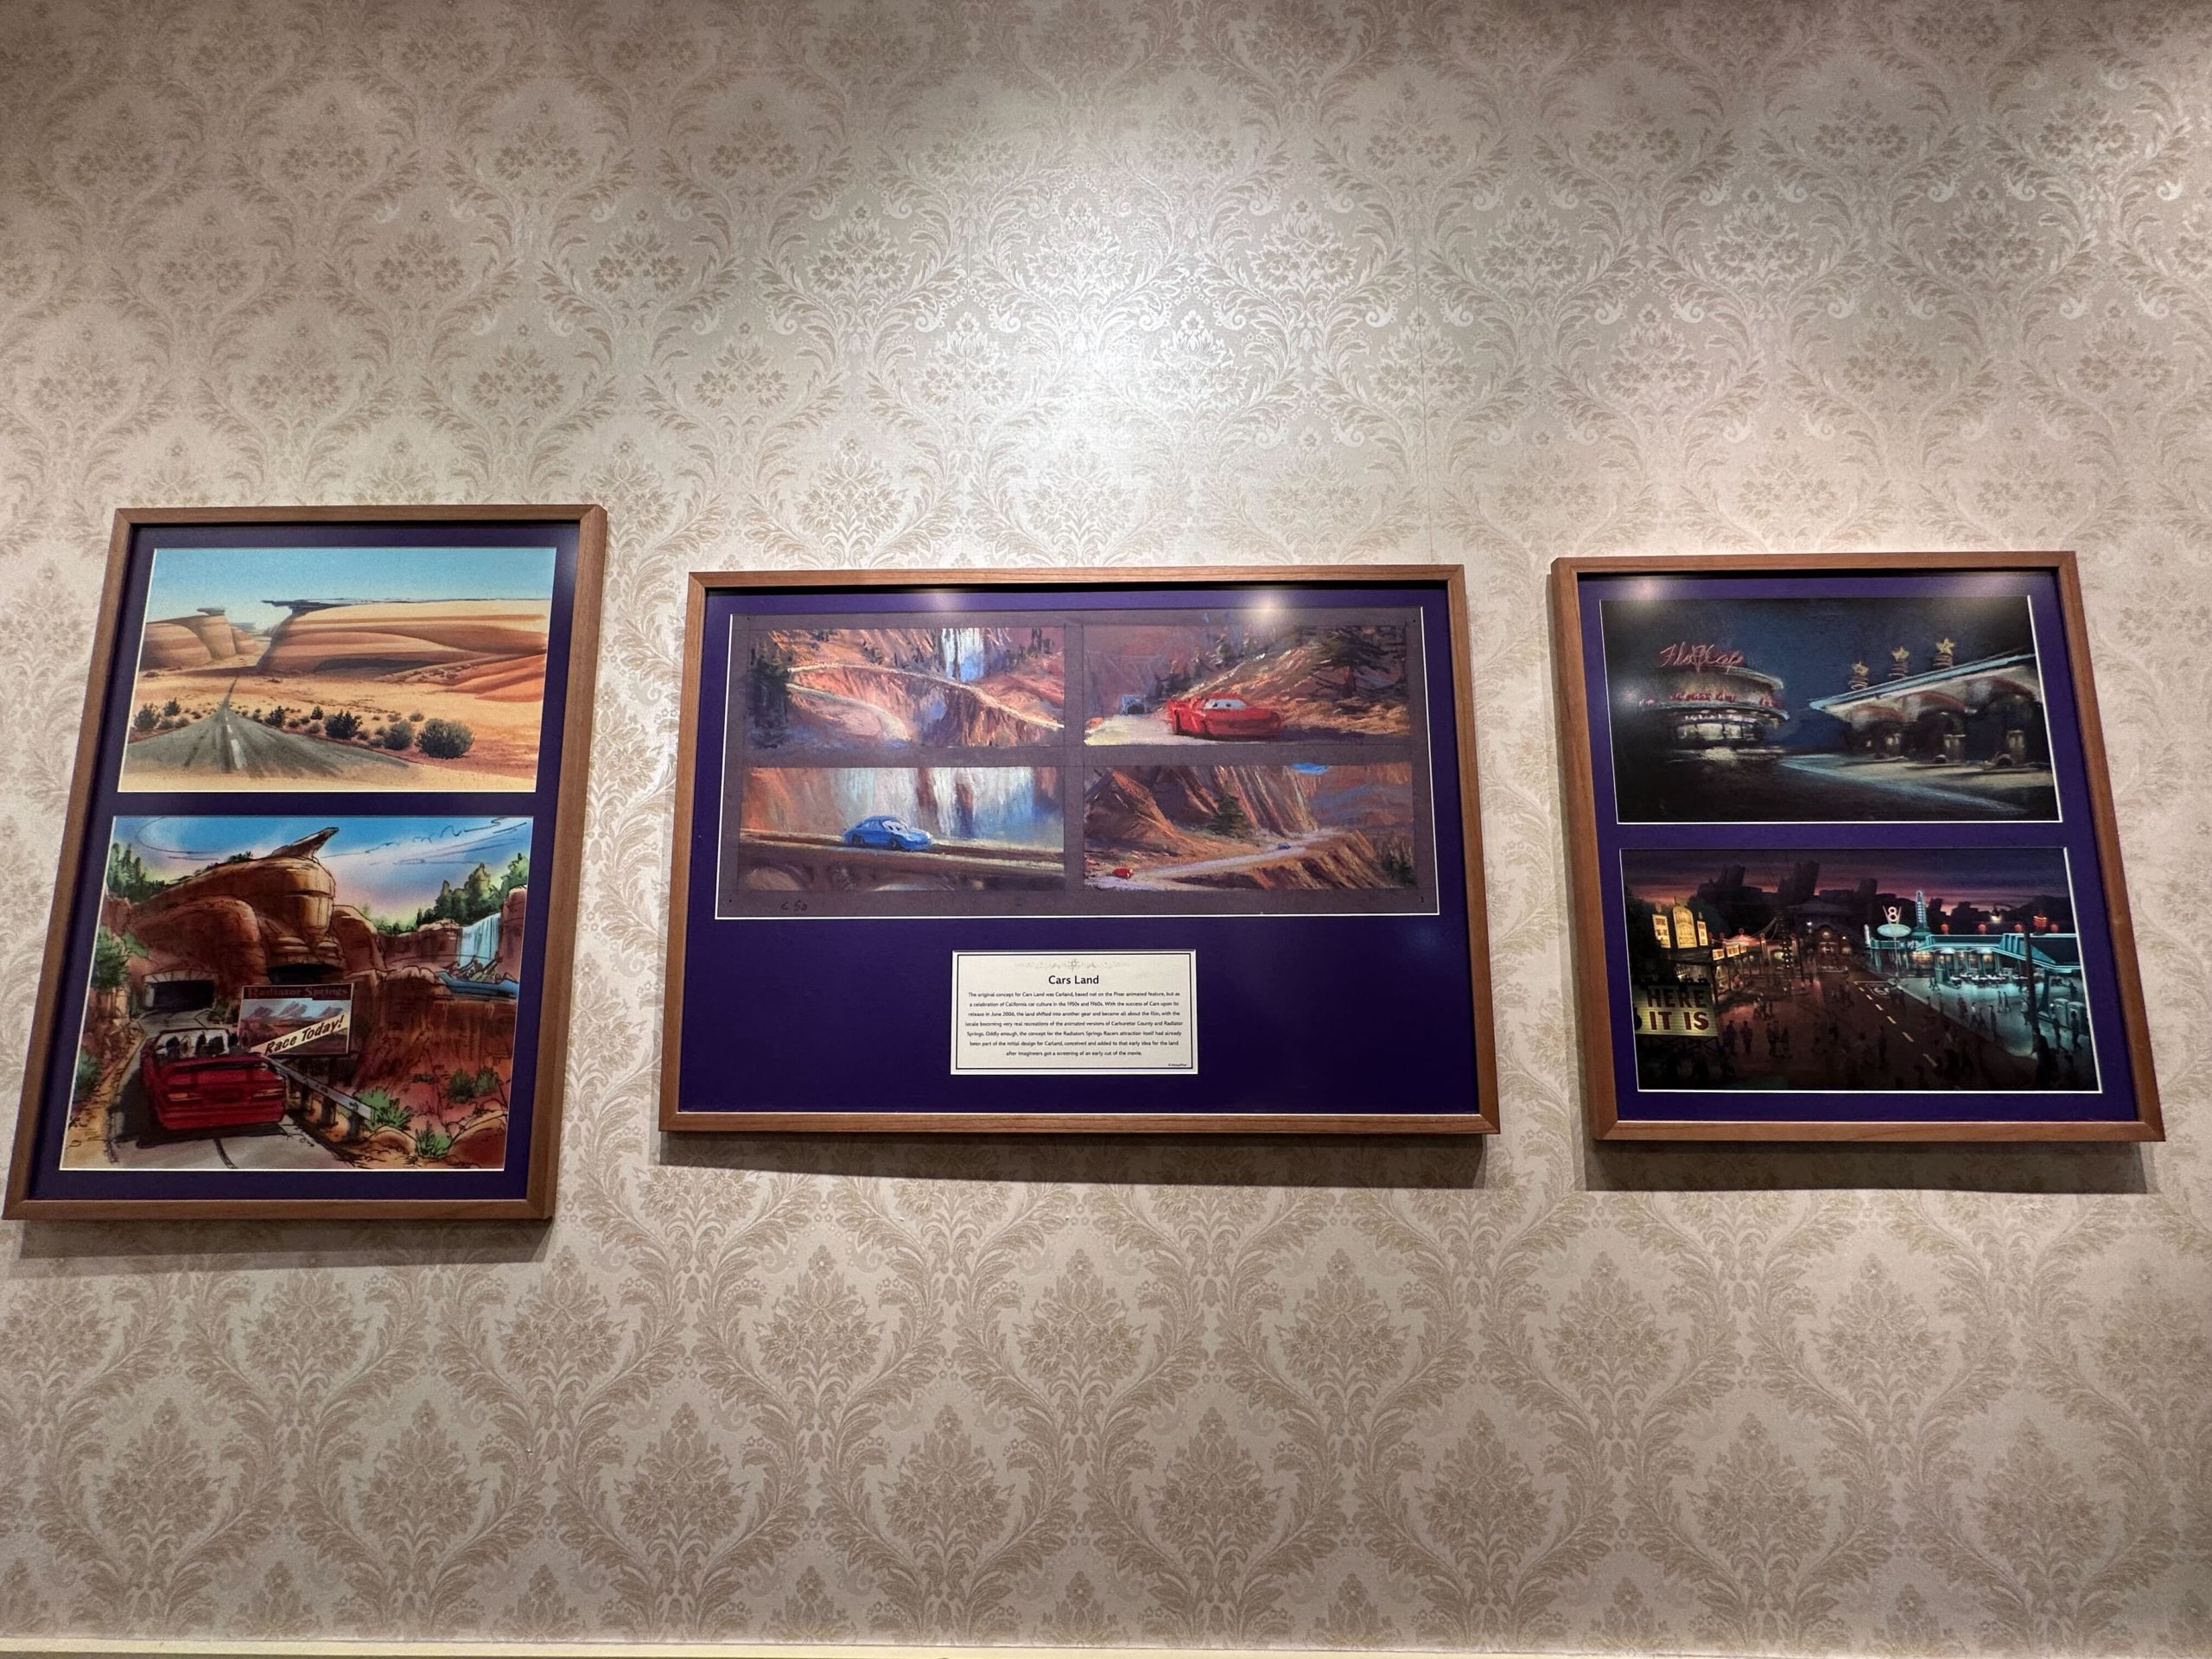 The Disney Gallery Presents: Disney 100 Years of Wonder